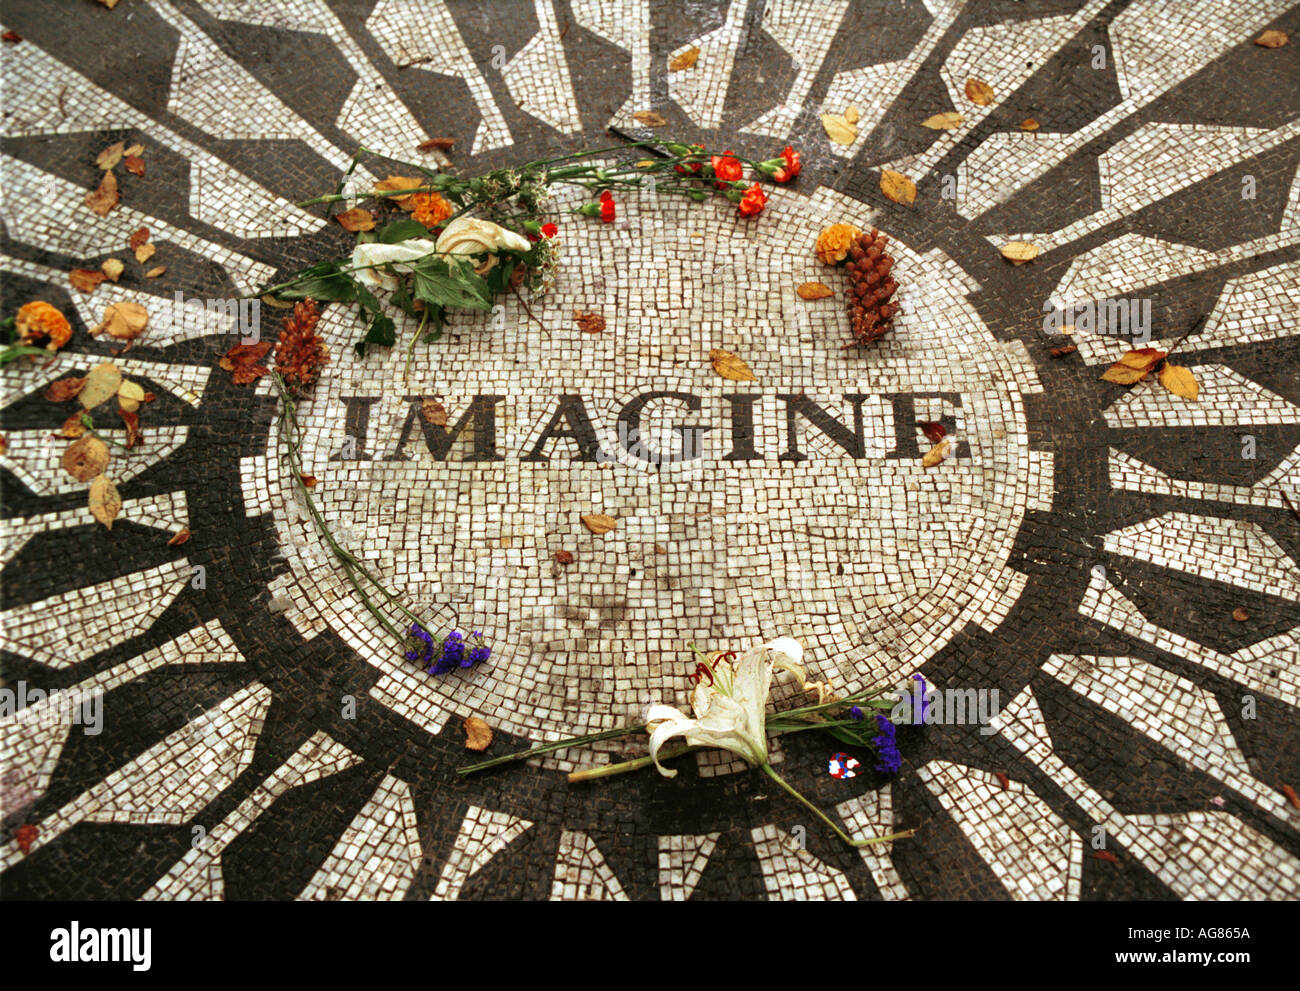 John Lennon s Imagine memorial Central park New York City USA Stock Photo